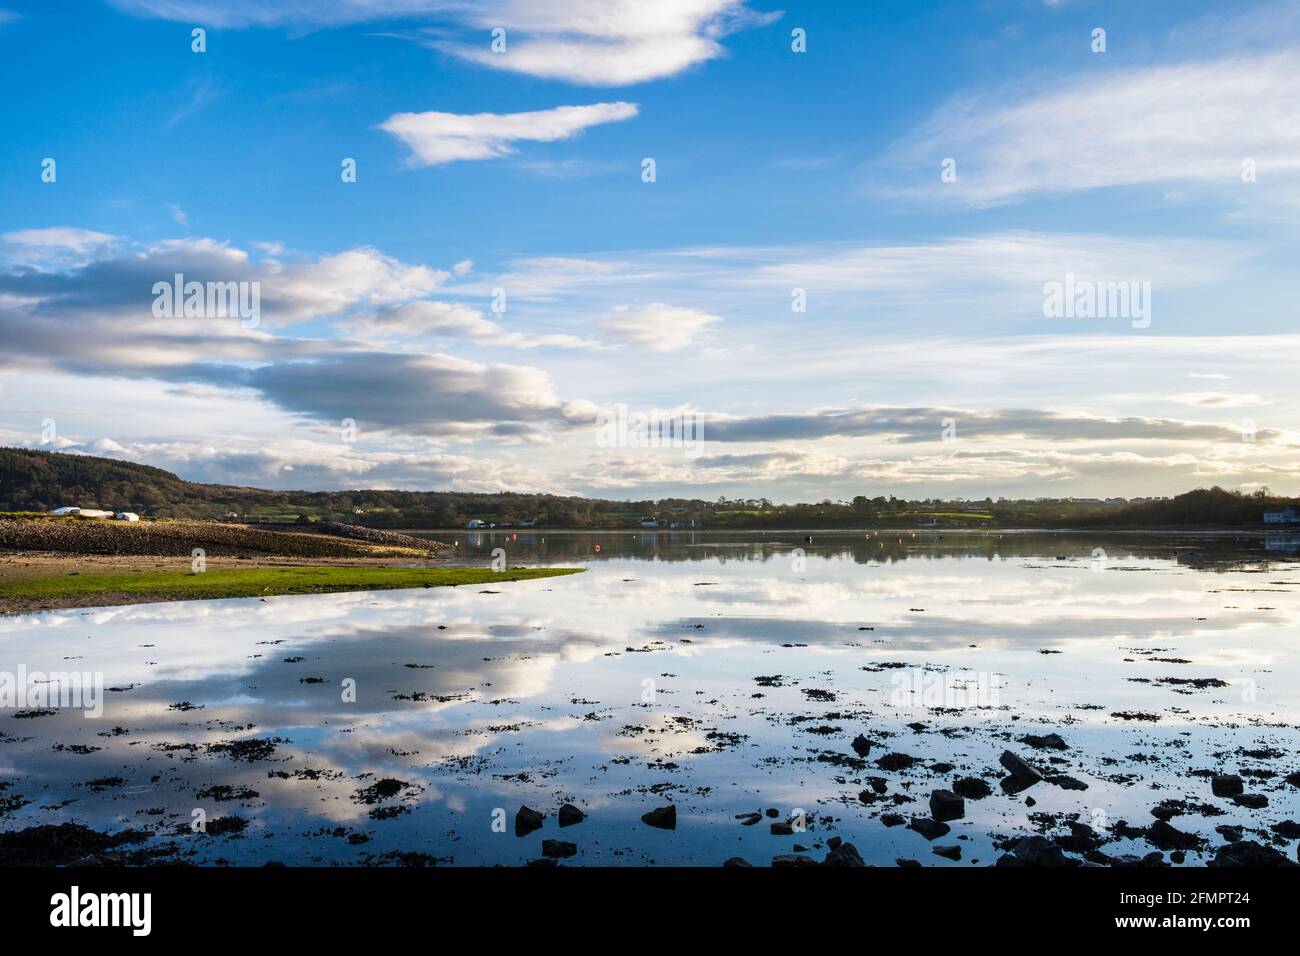 Scena tranquilla con nuvole bianche nel cielo blu riflessa nel mare calmo ad alta marea in Red Wharf Bay, Isola di Anglesey, Galles, Regno Unito, Gran Bretagna Foto Stock